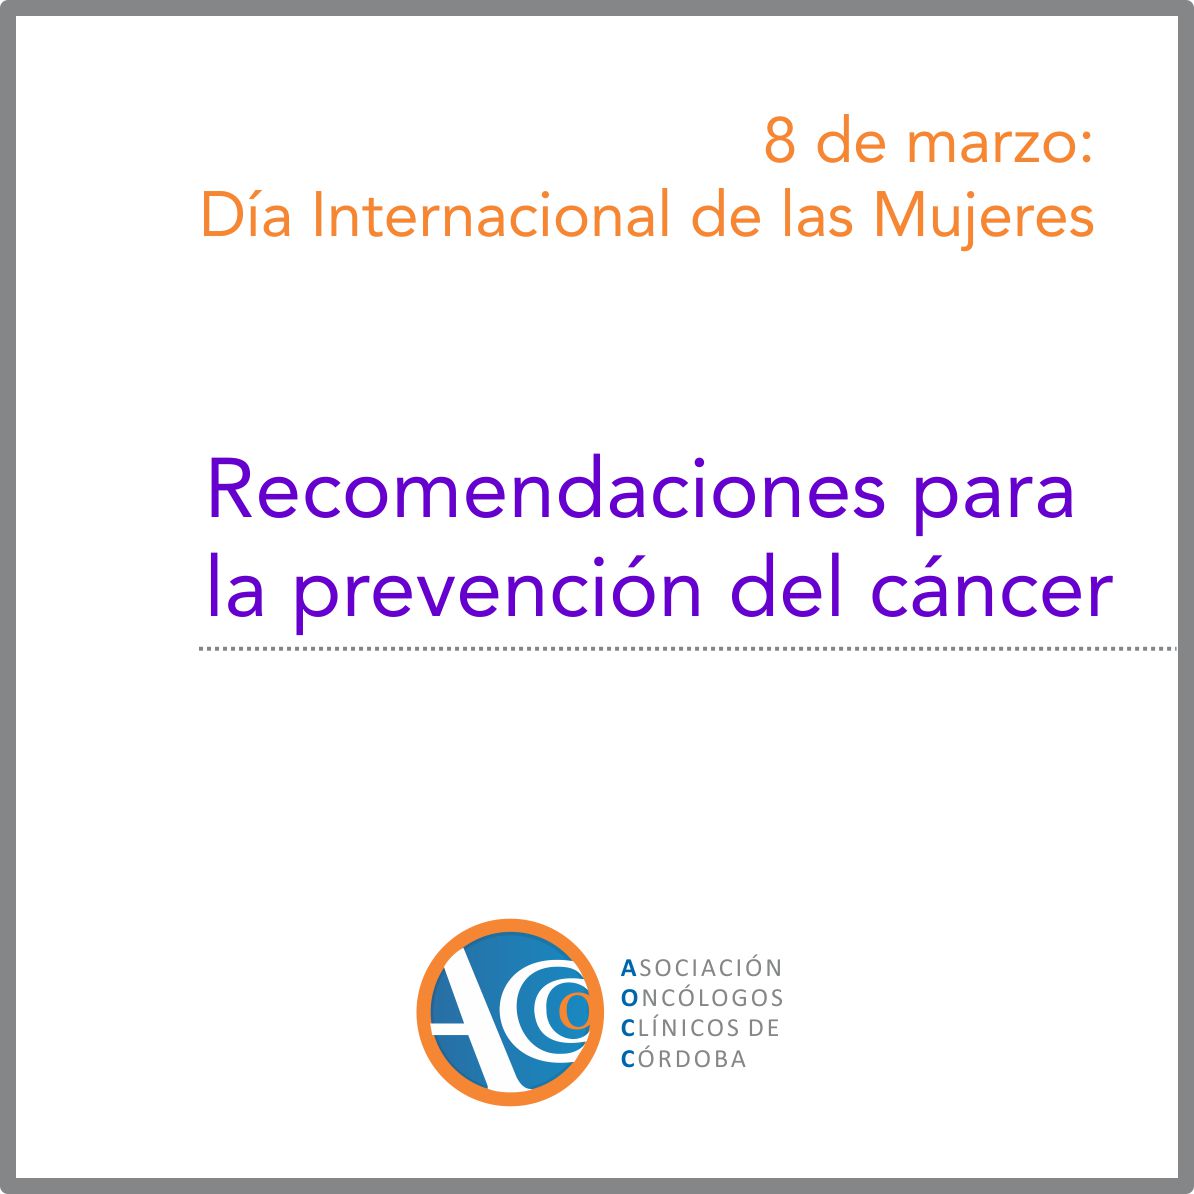 Mujeres y prevención del cáncer